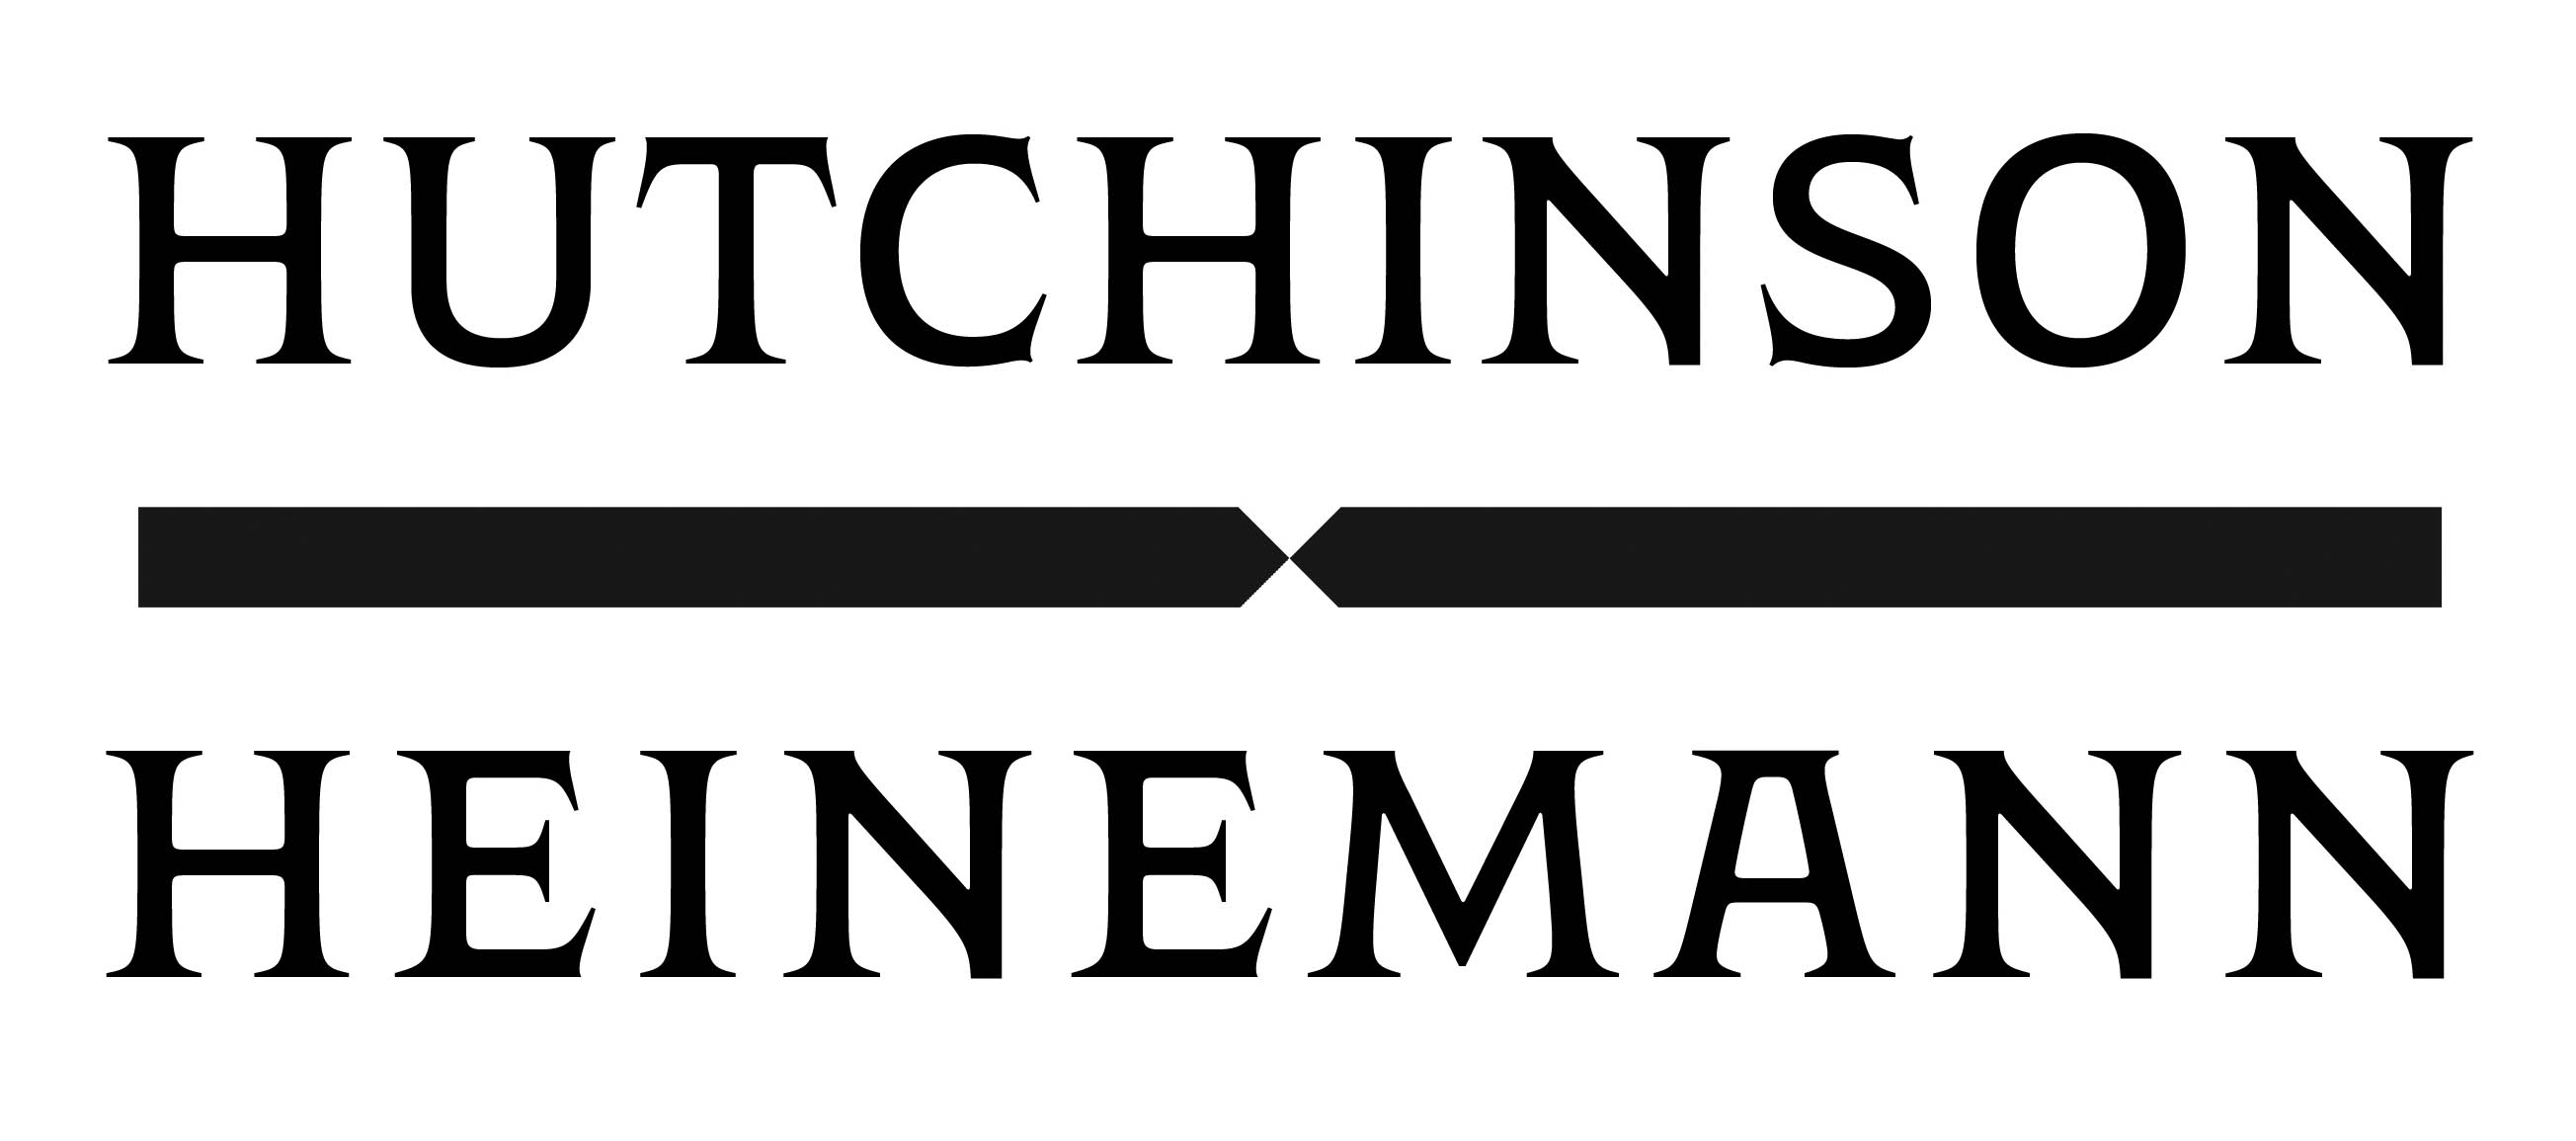 Hutchinson Heinemann logo